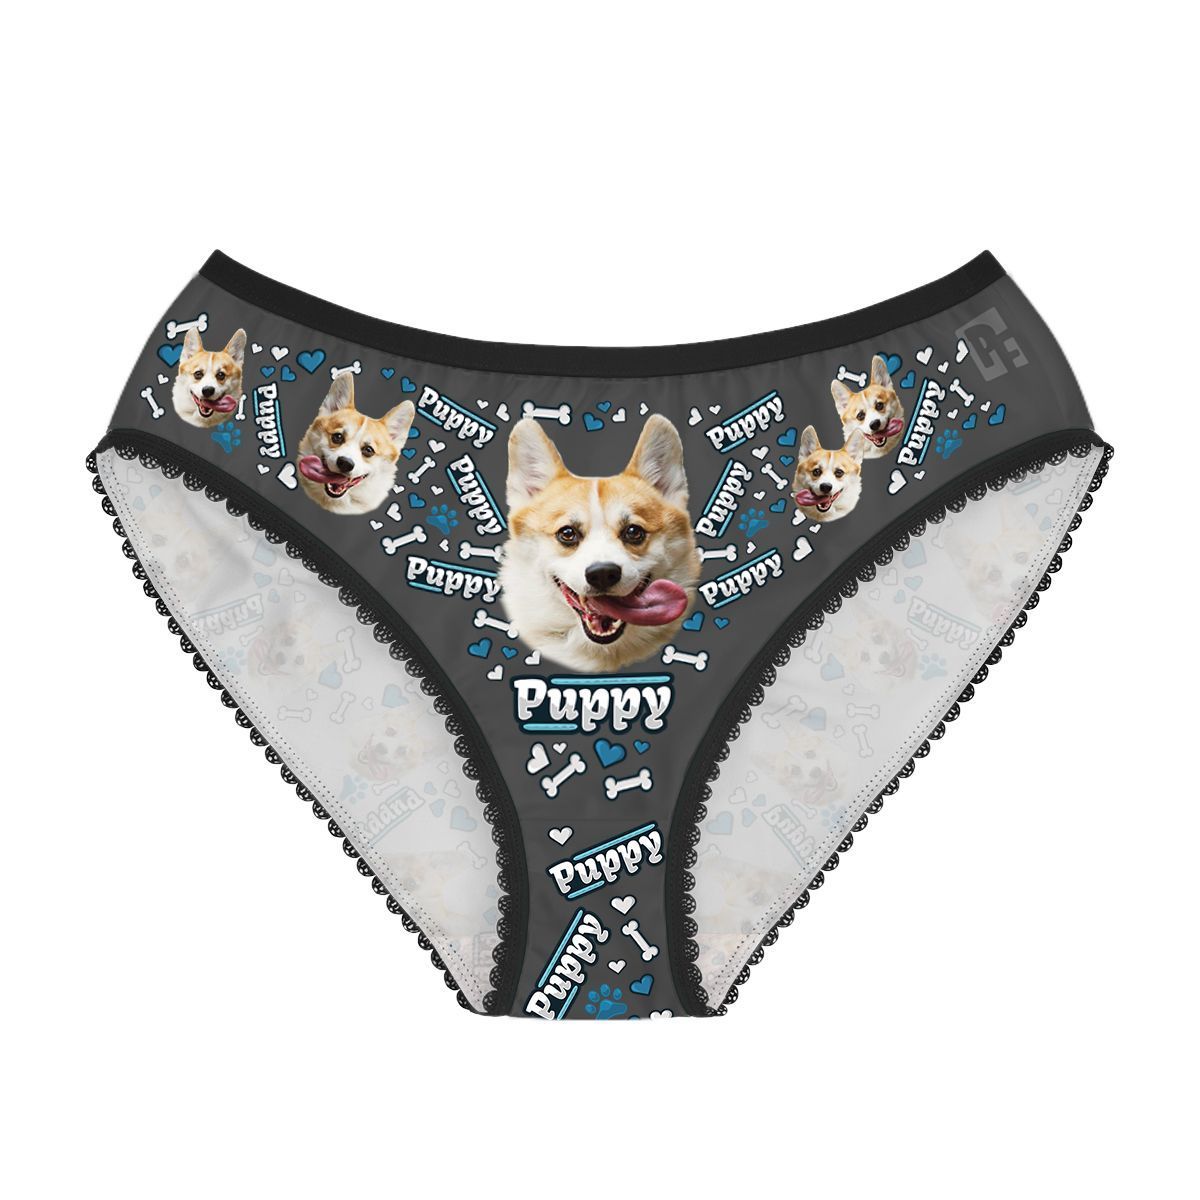 Dark Puppy women's underwear briefs personalized with photo printed on them